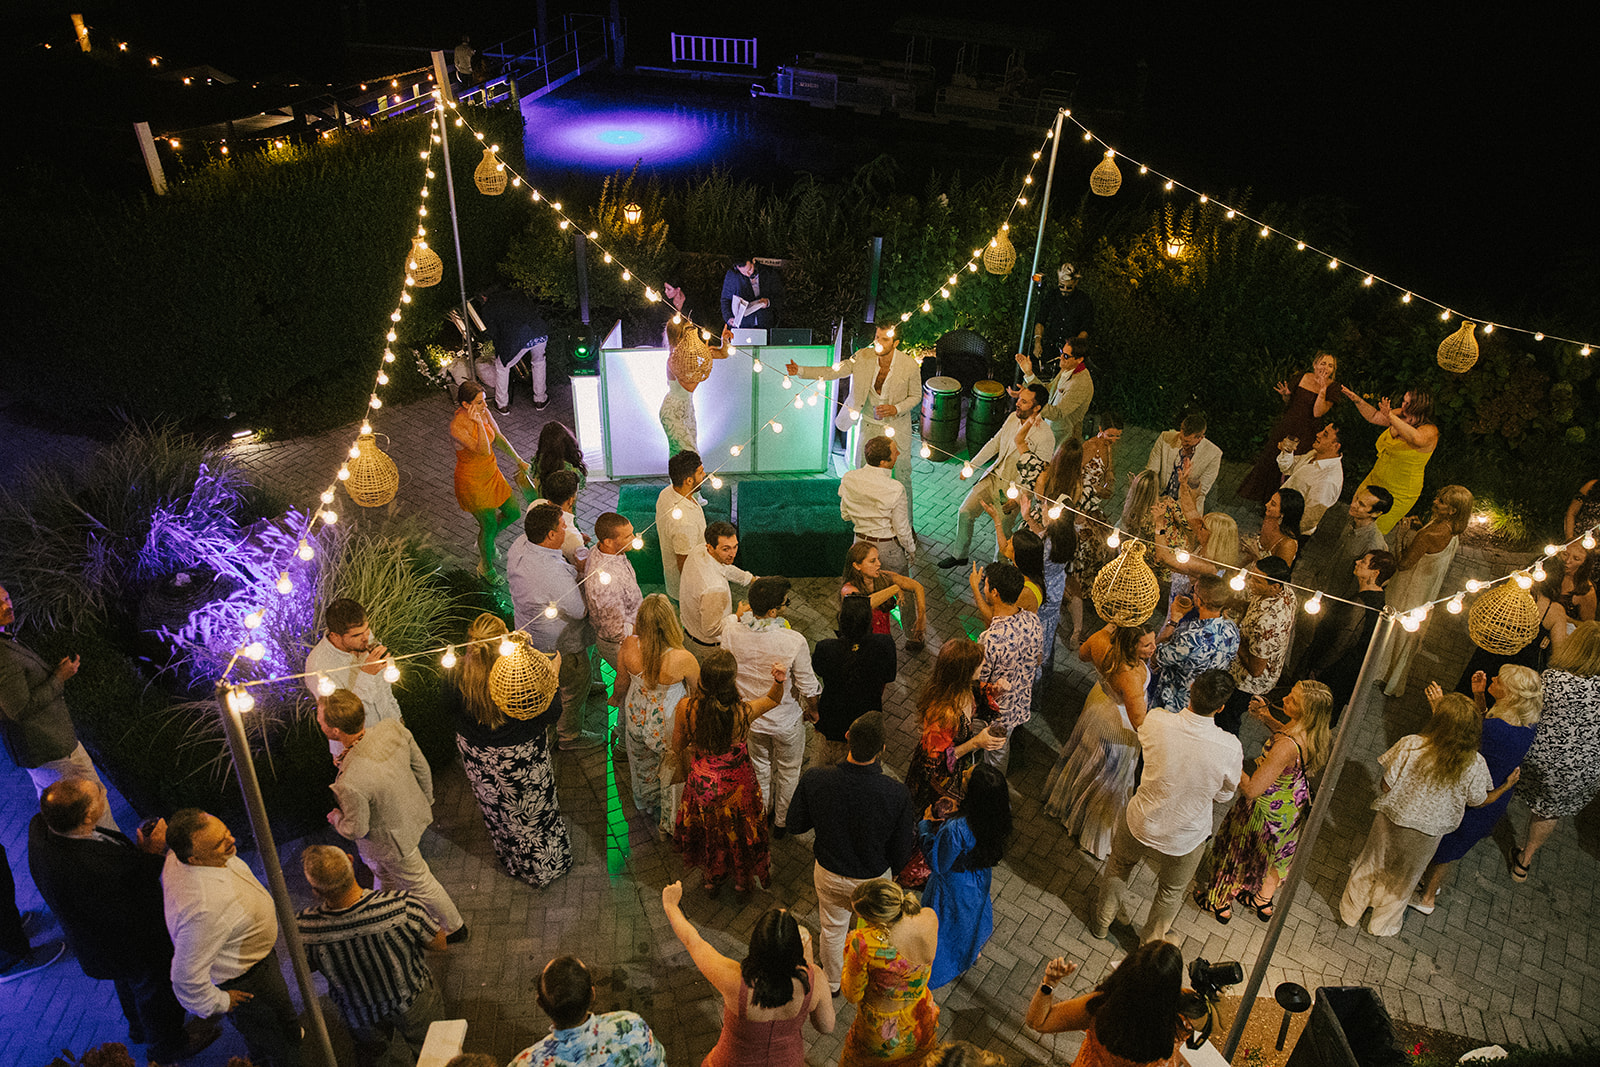 Epic dance floor picture
Wedding photographer Hamptons New York